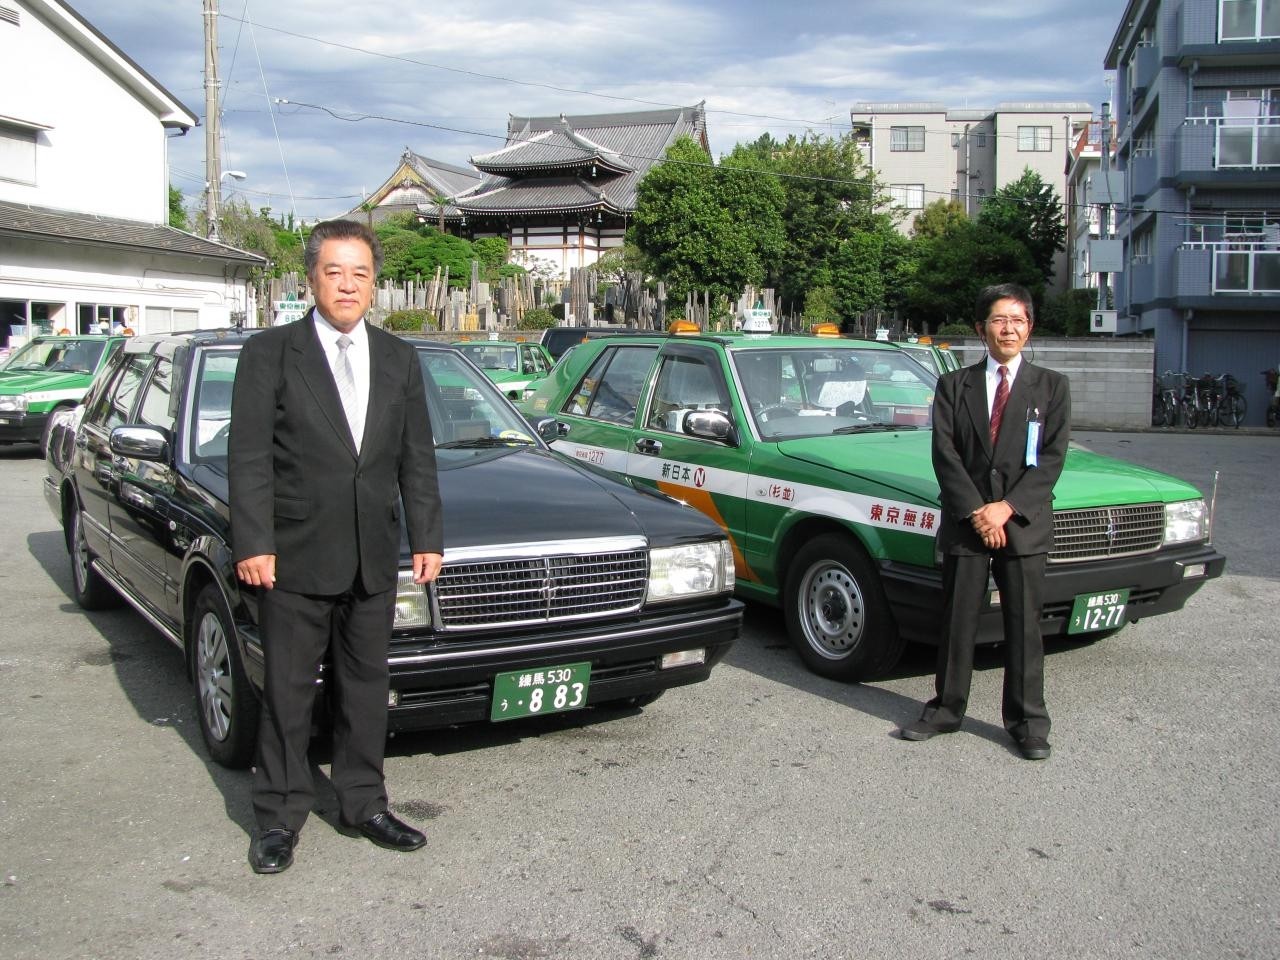 新日本交通株式会社 タクシードライバー 歩合あり 給与保証あり 勤務時間選択可 未経験可 アットホーム 求人 転職情報のキャリコネ転職